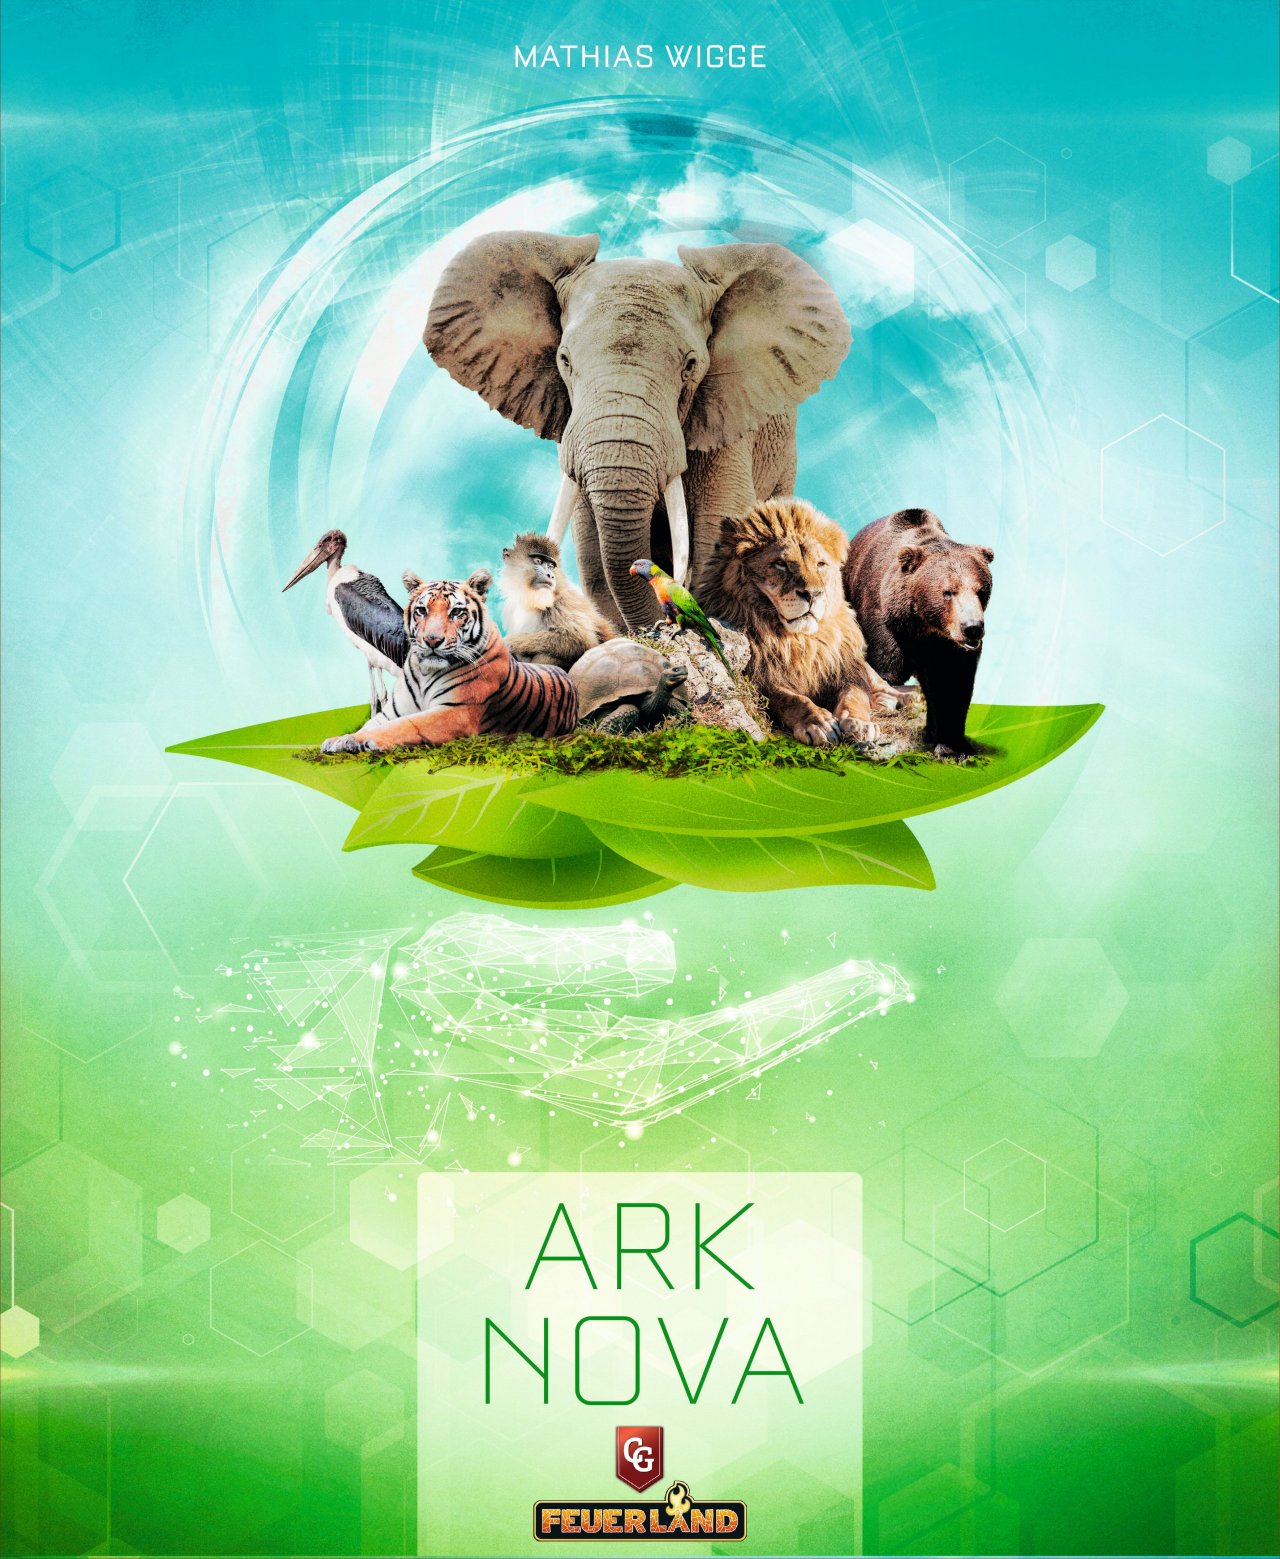 Recensione Ark Nova: recensione del gioco da tavolo | La Tana dei Goblin